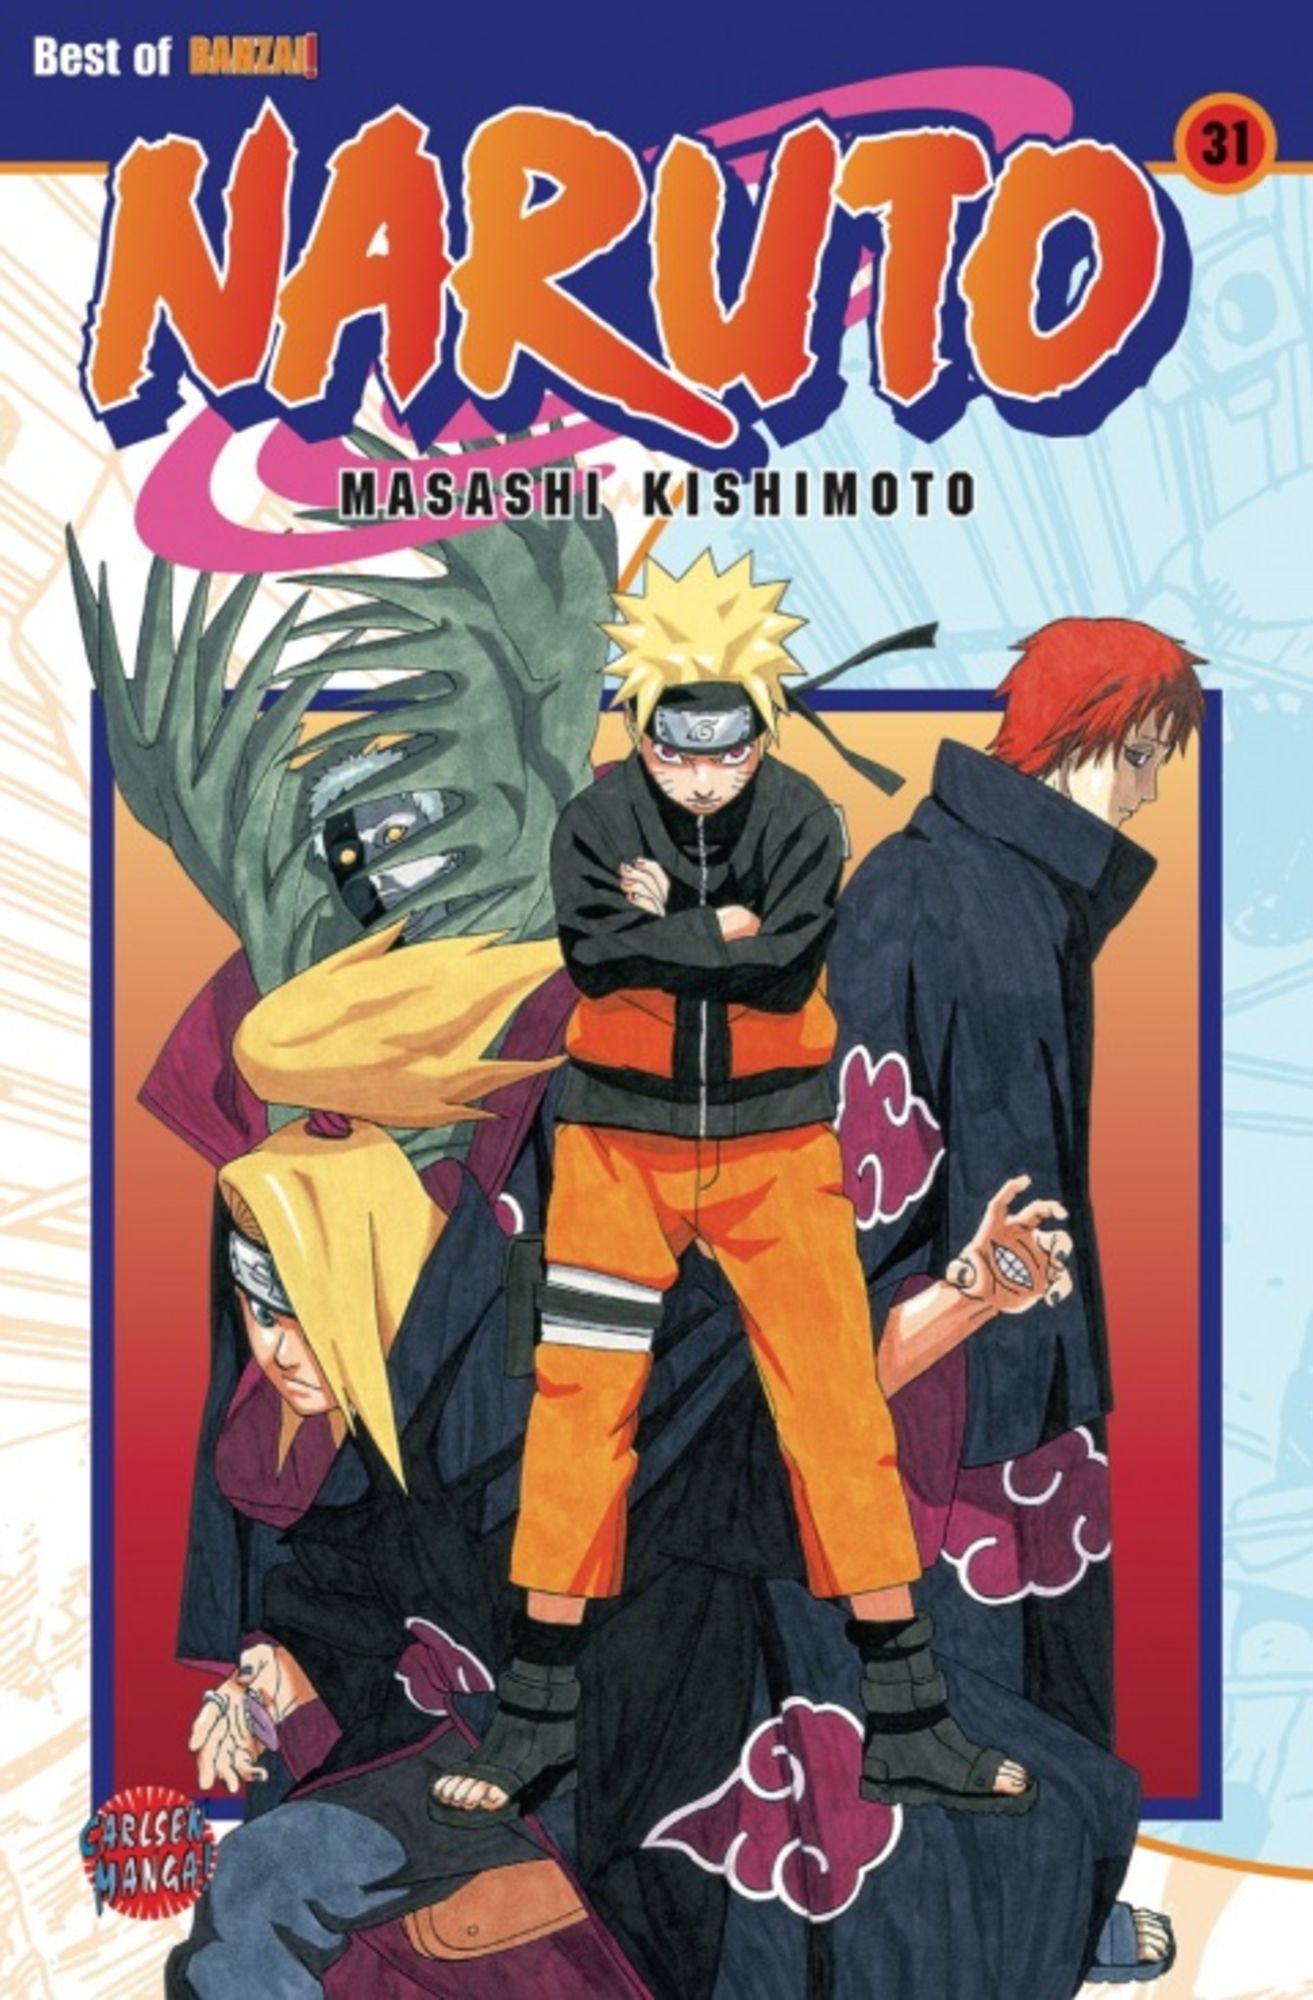 Naruto - Mangas Bd. 31' von 'Masashi Kishimoto' - Buch - '978-3-551-77981-6